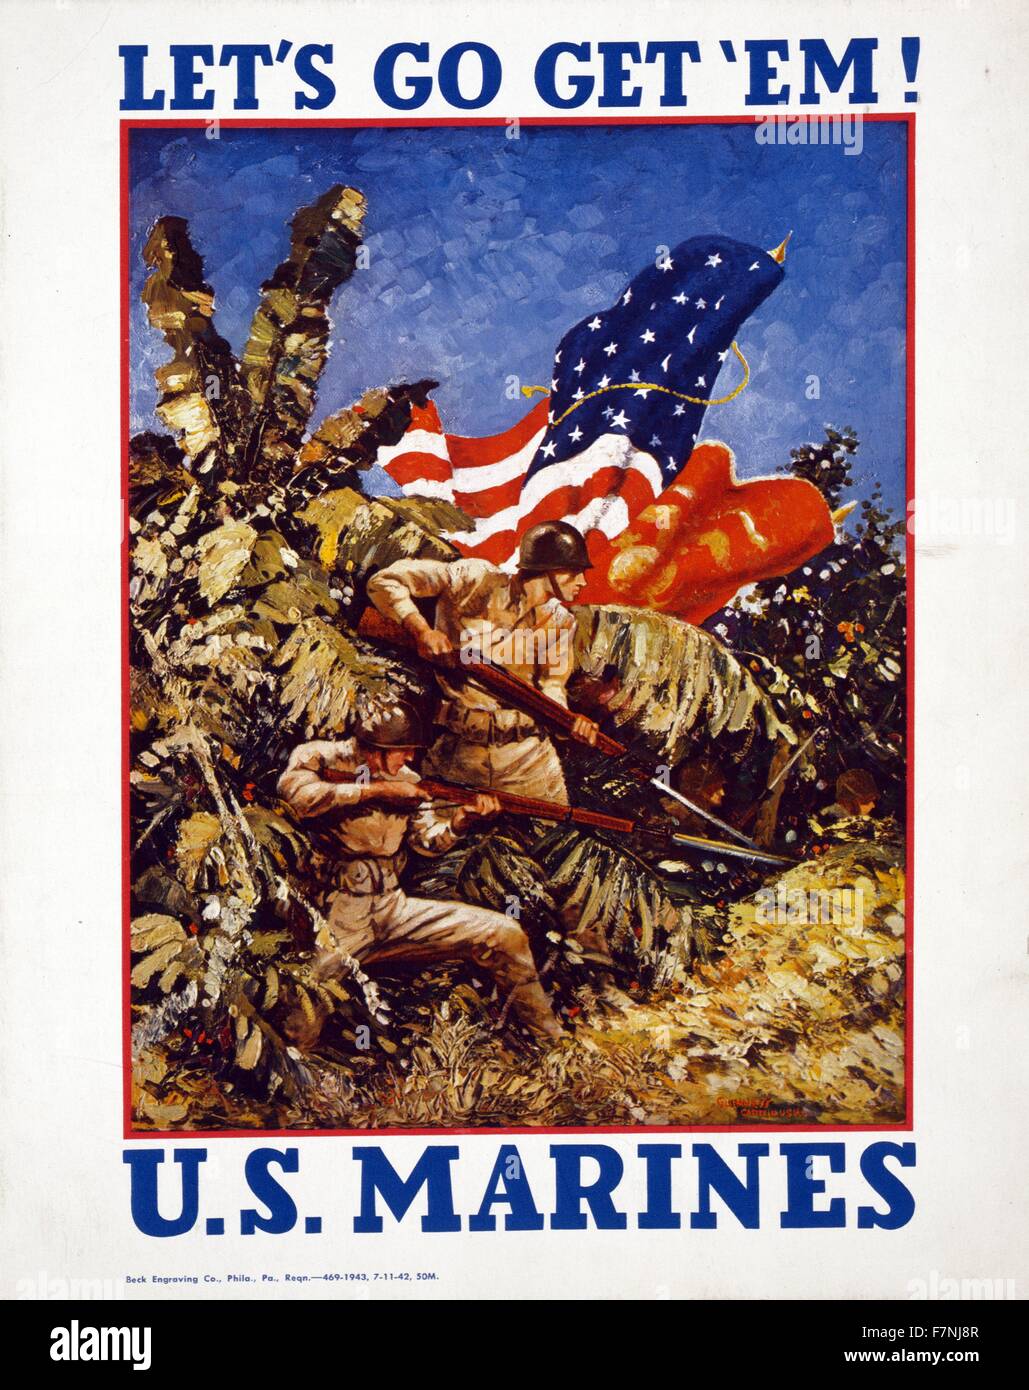 Andiamo per ottenere 'em! Stati Uniti Marines / Guinness, Capitano USMC. 1942 Poster Marines cuscinetto fucili con baionette e bandiere in una giungla. La Seconda Guerra Mondiale la propaganda americana Foto Stock